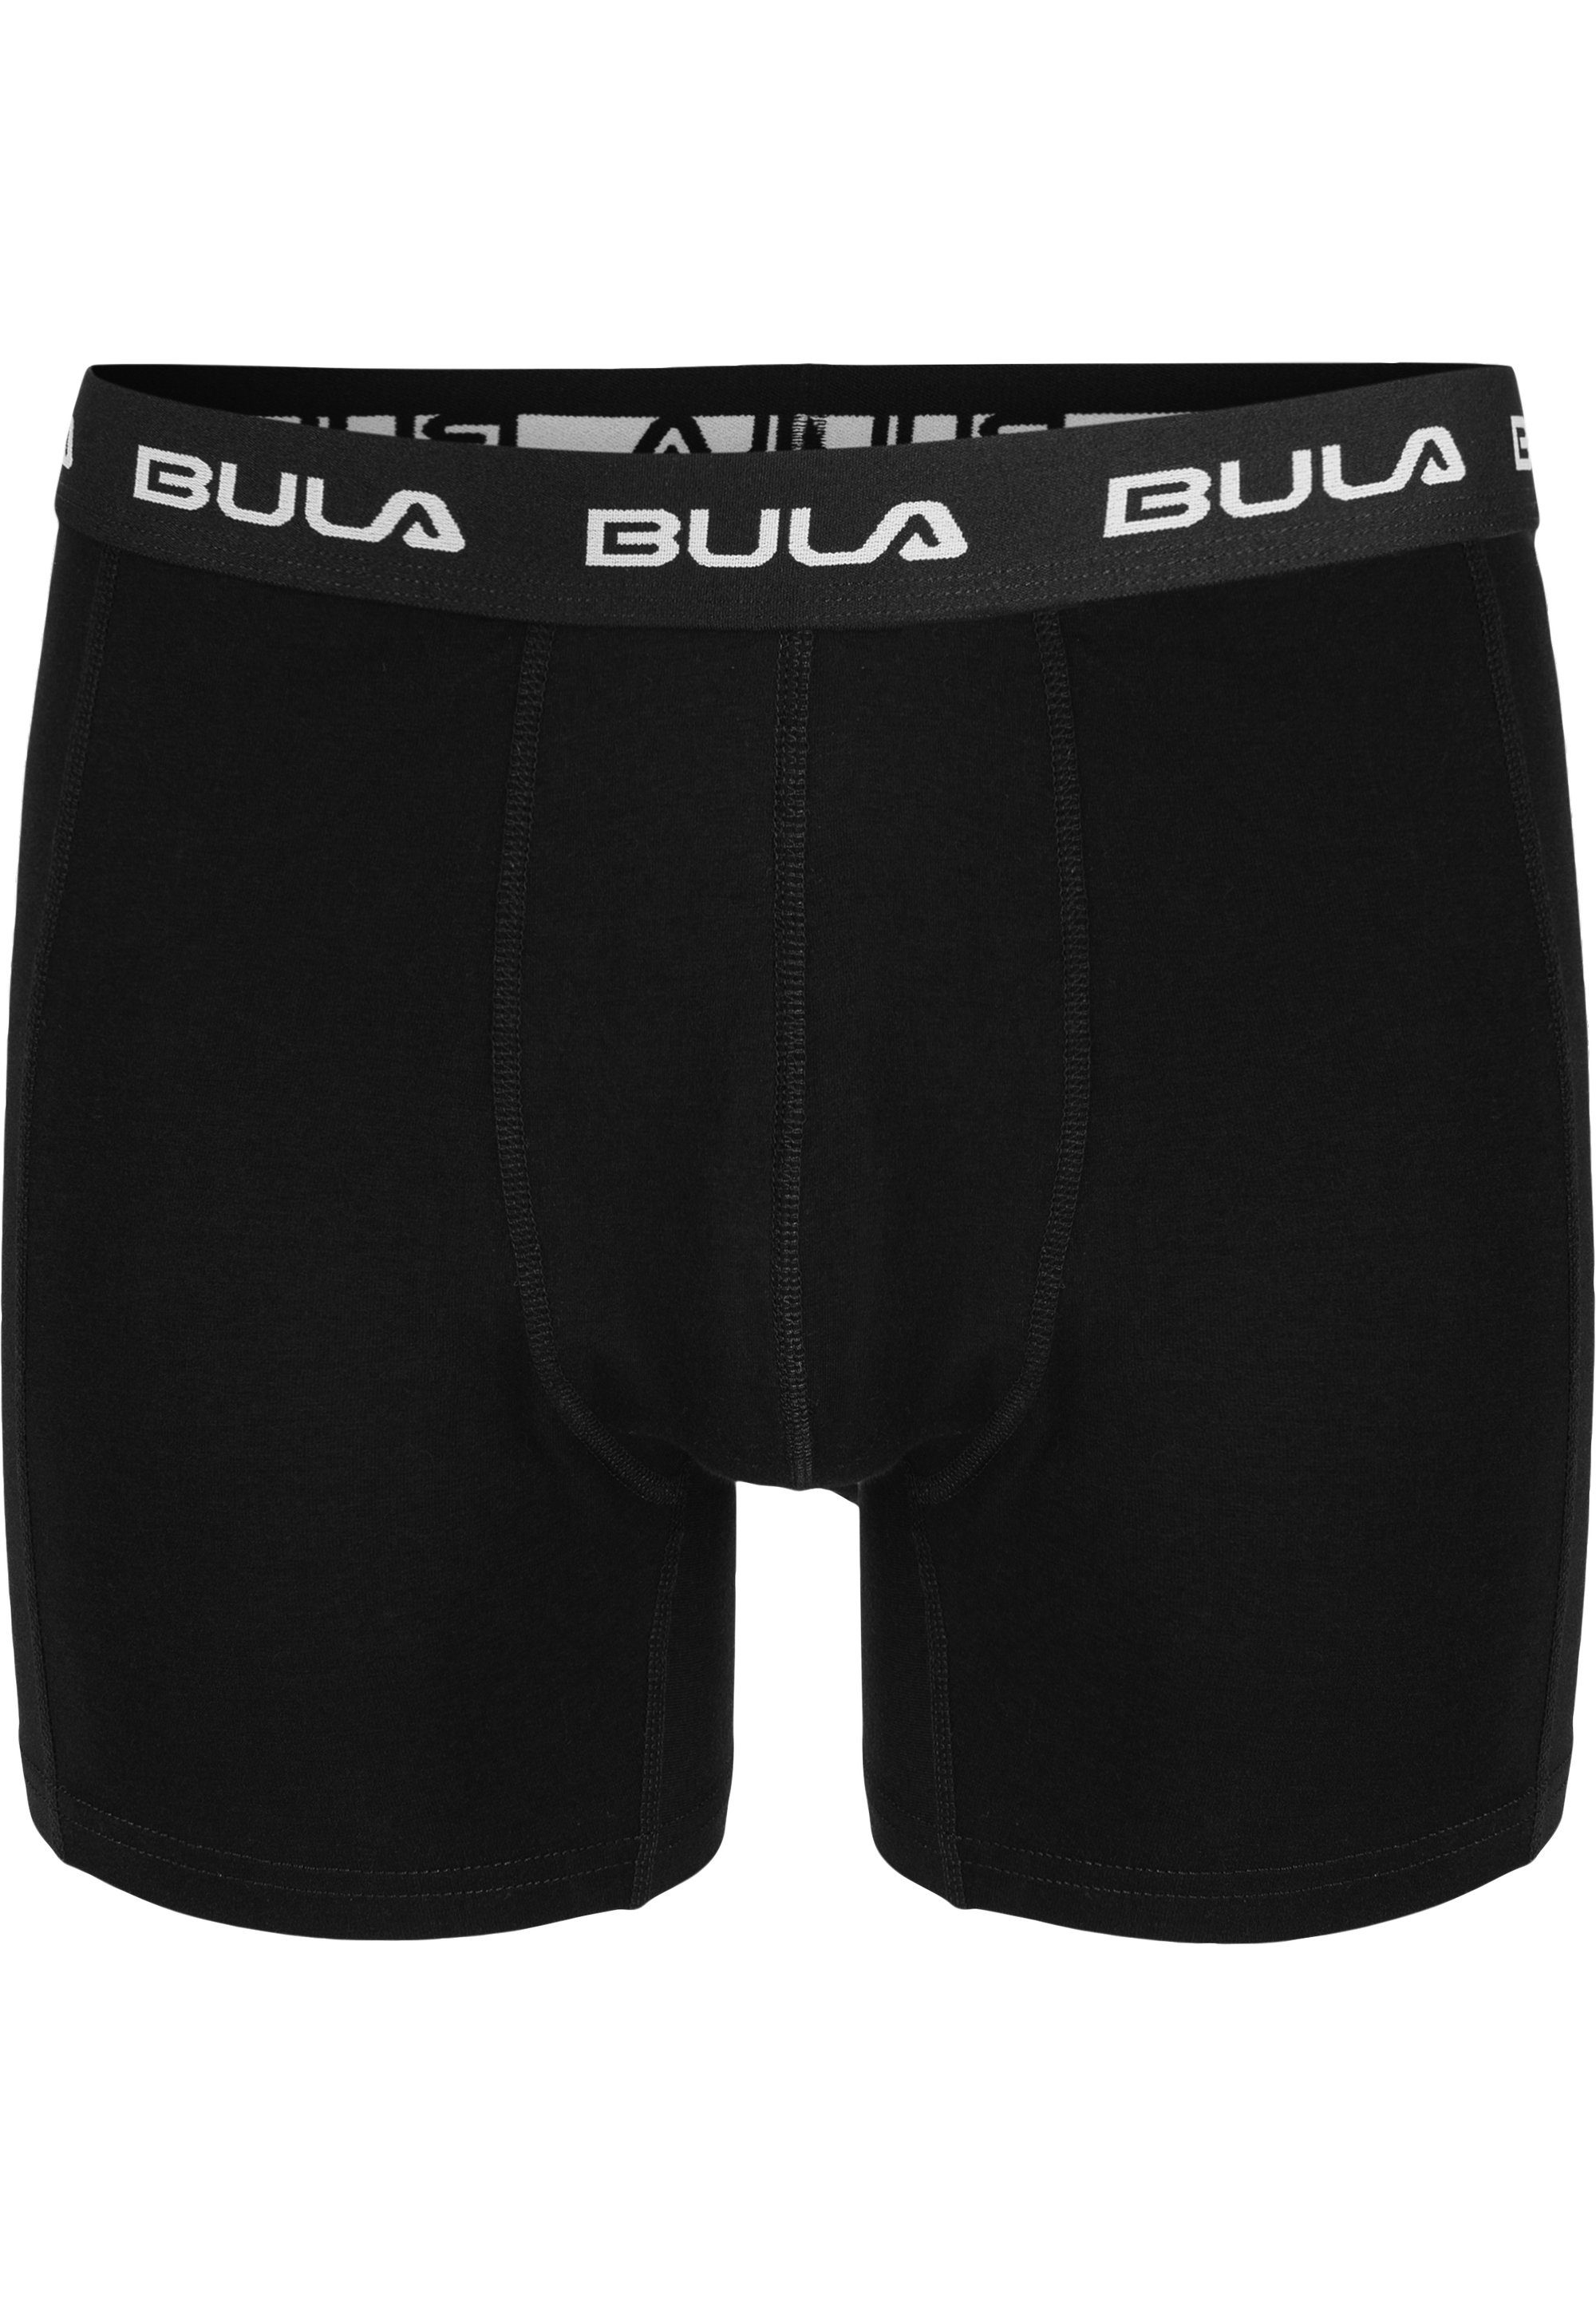 Boxershorts 2er-Pack Design sportlichen im BULA schwarz